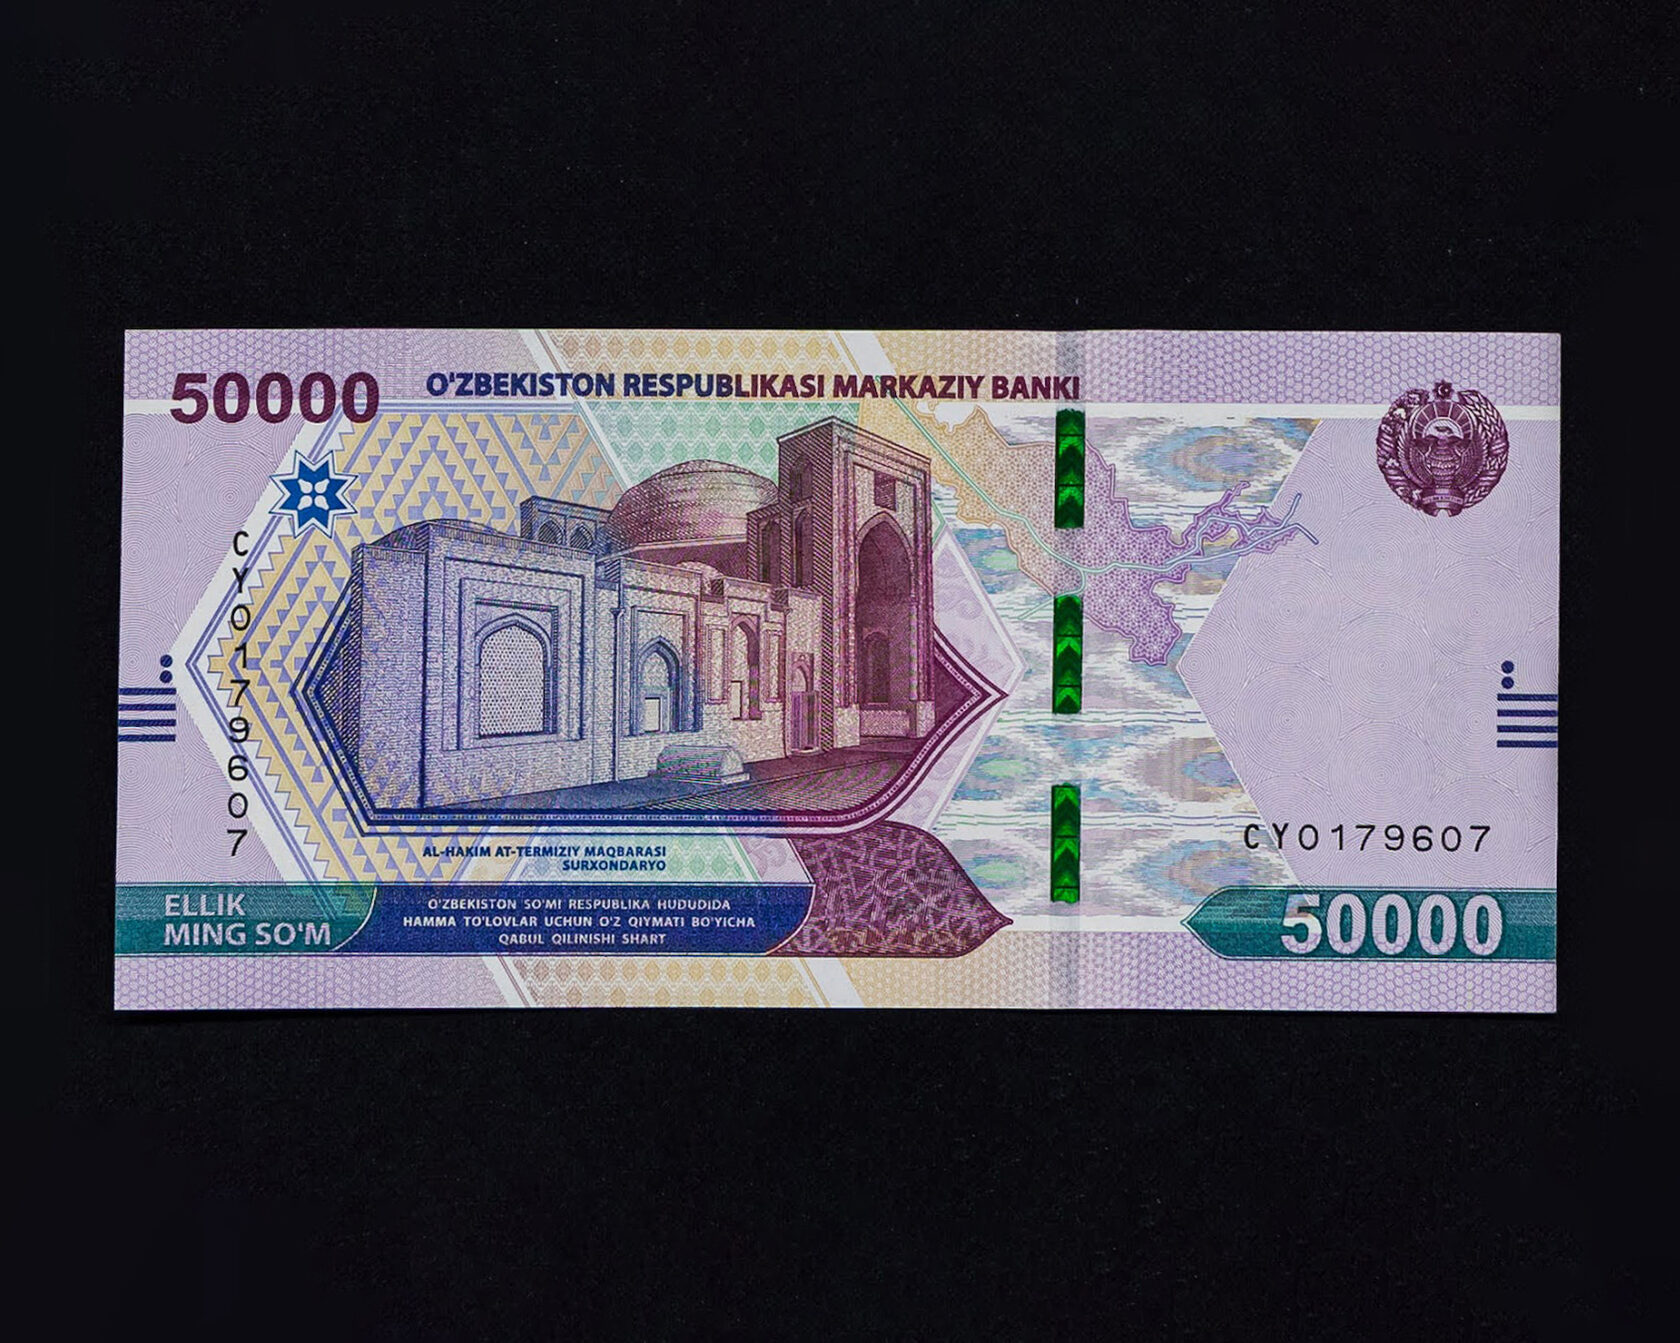 700000 сум. 2000 Узбекских сум. Узбекистан валюта 100$. Валюта Узбекистана сум. 50000 Сум купюра.